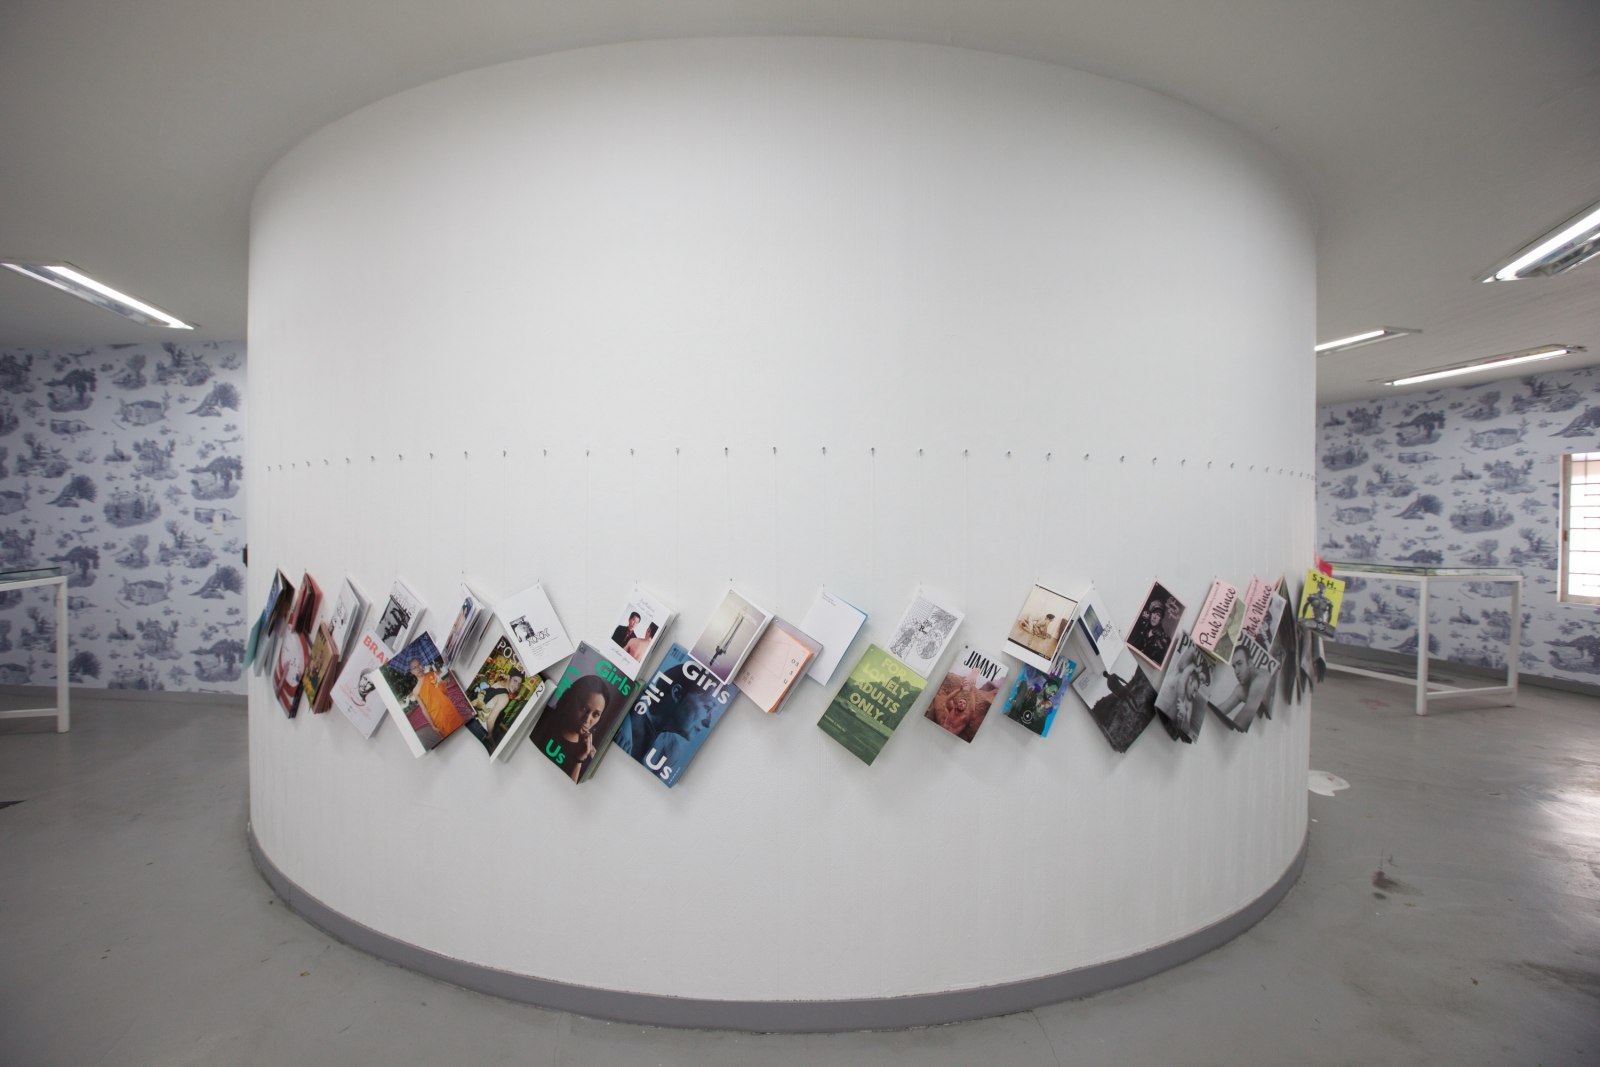 <div class="image_caption_container"><div class="image_caption"><p>Exhibition view,</p><p>Gwangju Biennale, South Korea, 2014</p></div></div>